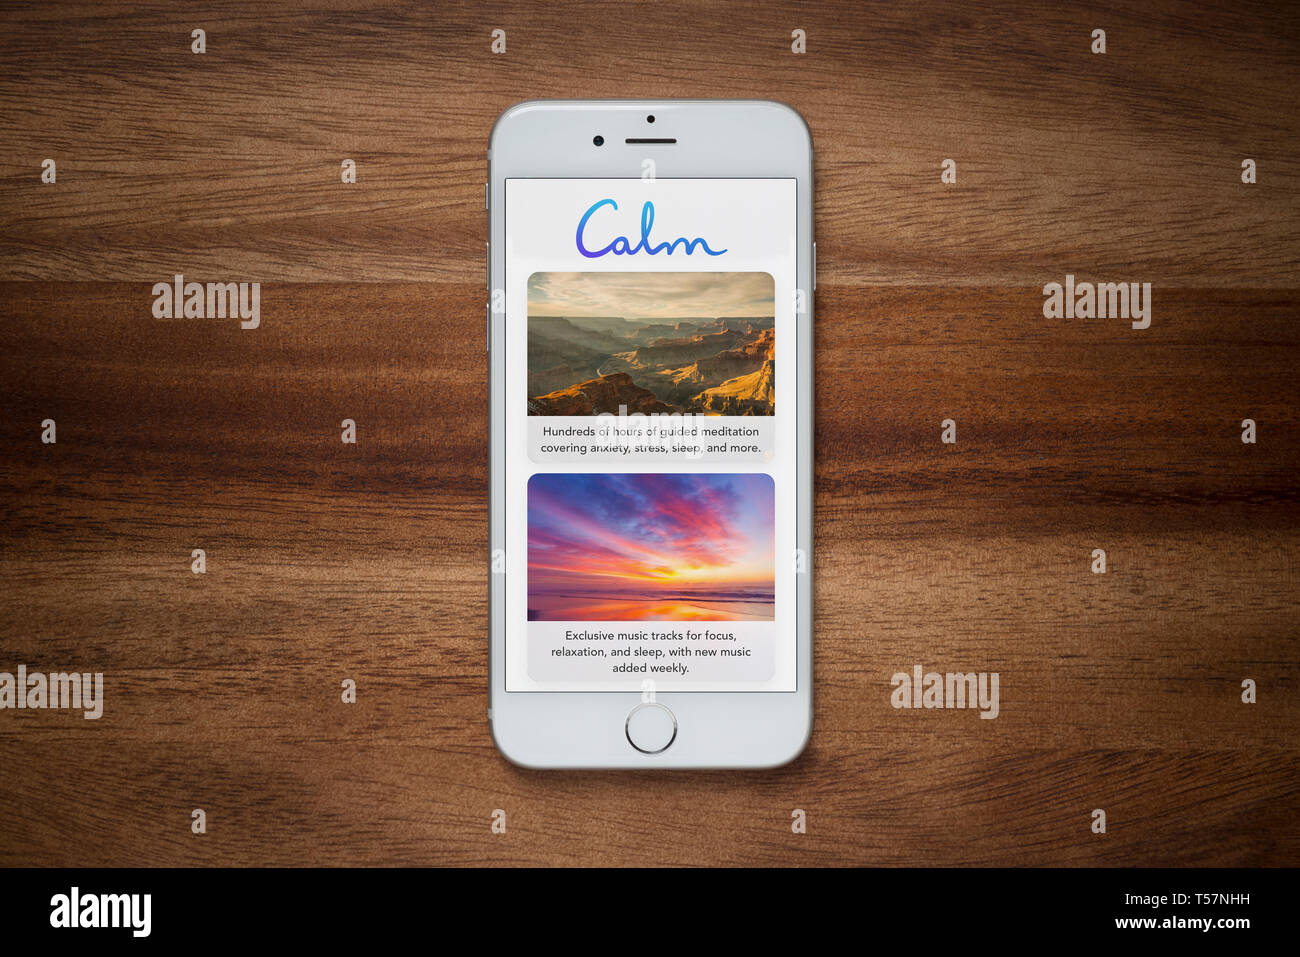 Un iPhone montrant le calme app repose sur une table en bois brut (usage éditorial uniquement). Banque D'Images